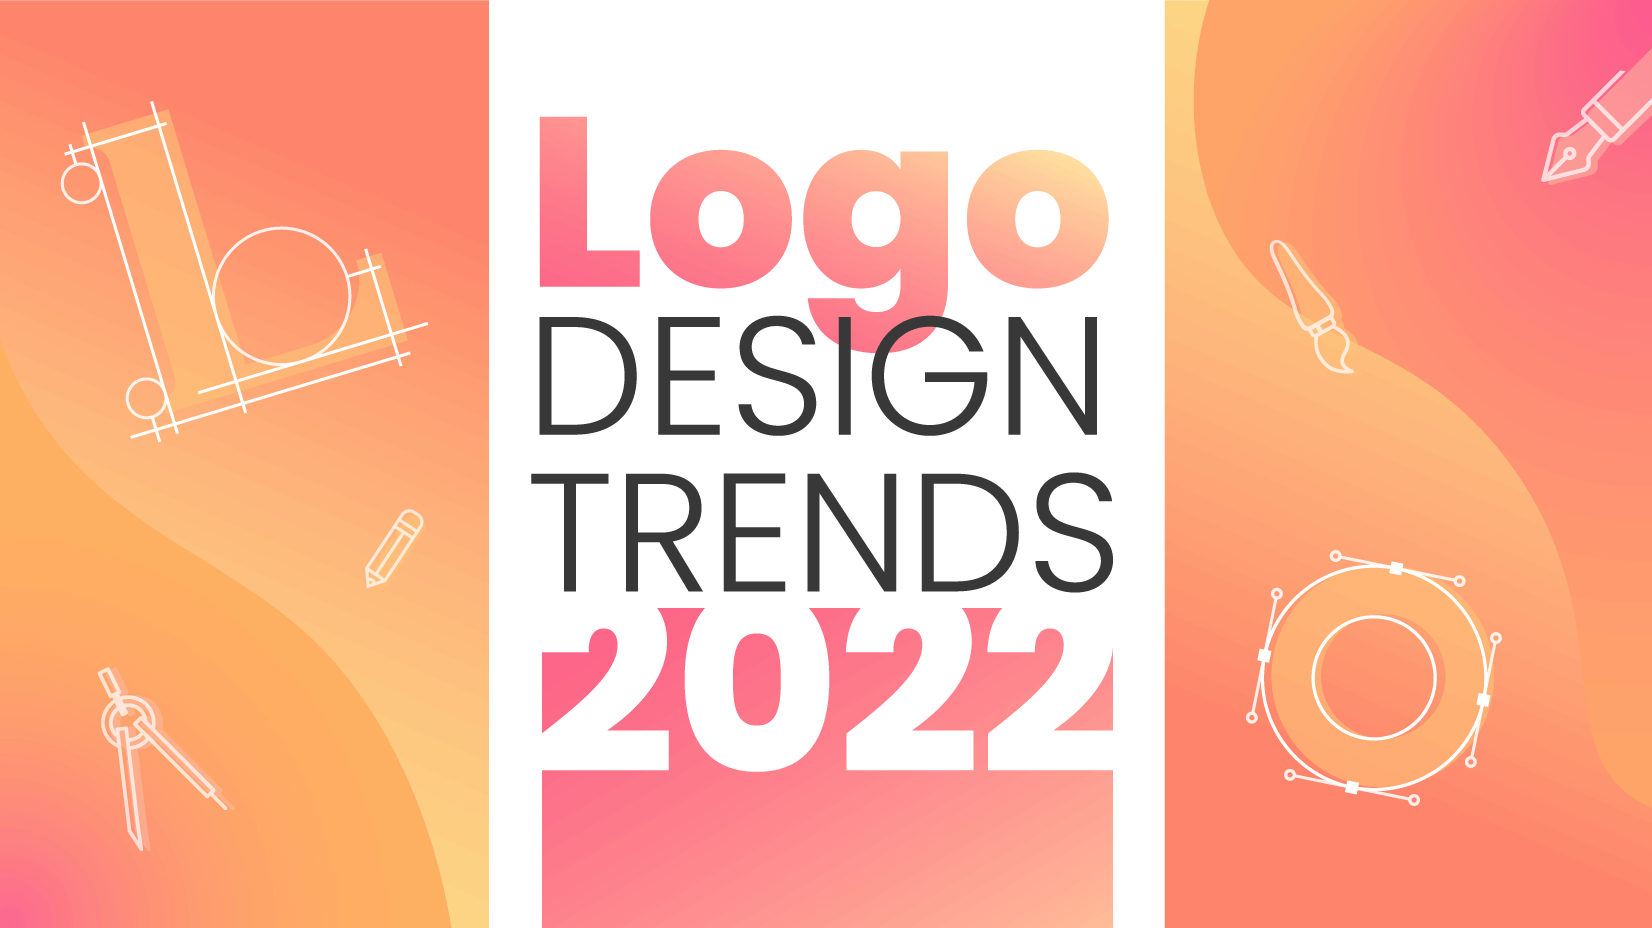 Xu hướng thiết kế logo 2022: Mang lại sự cường điệu cho logo ...